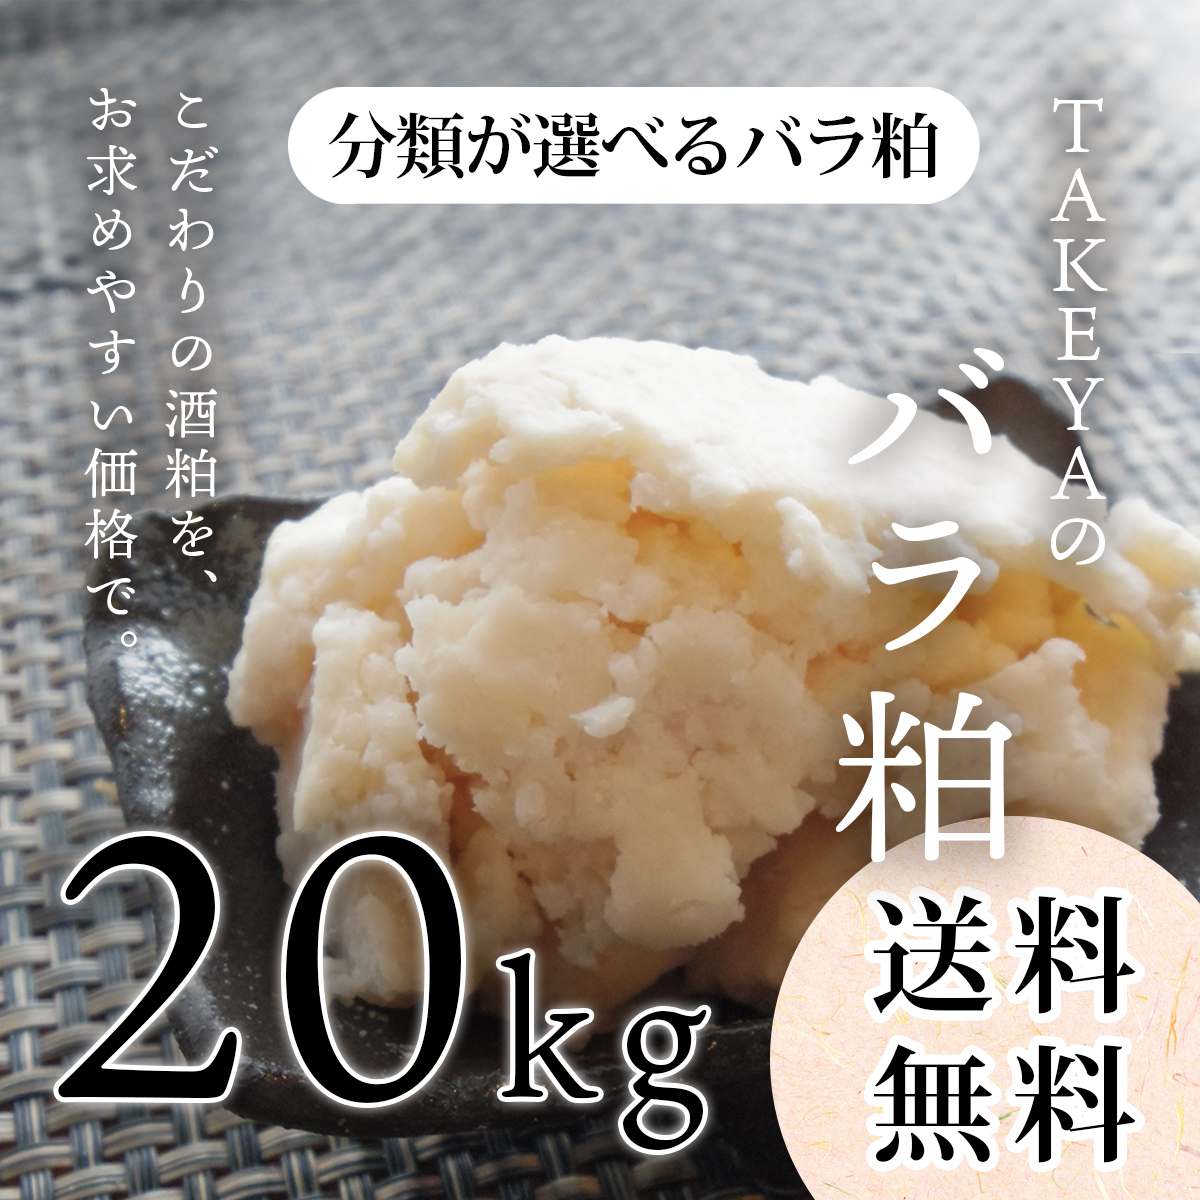 TAKEYAの分類が選べるバラ粕 (極上純米大吟醸から純米まで) 20kg